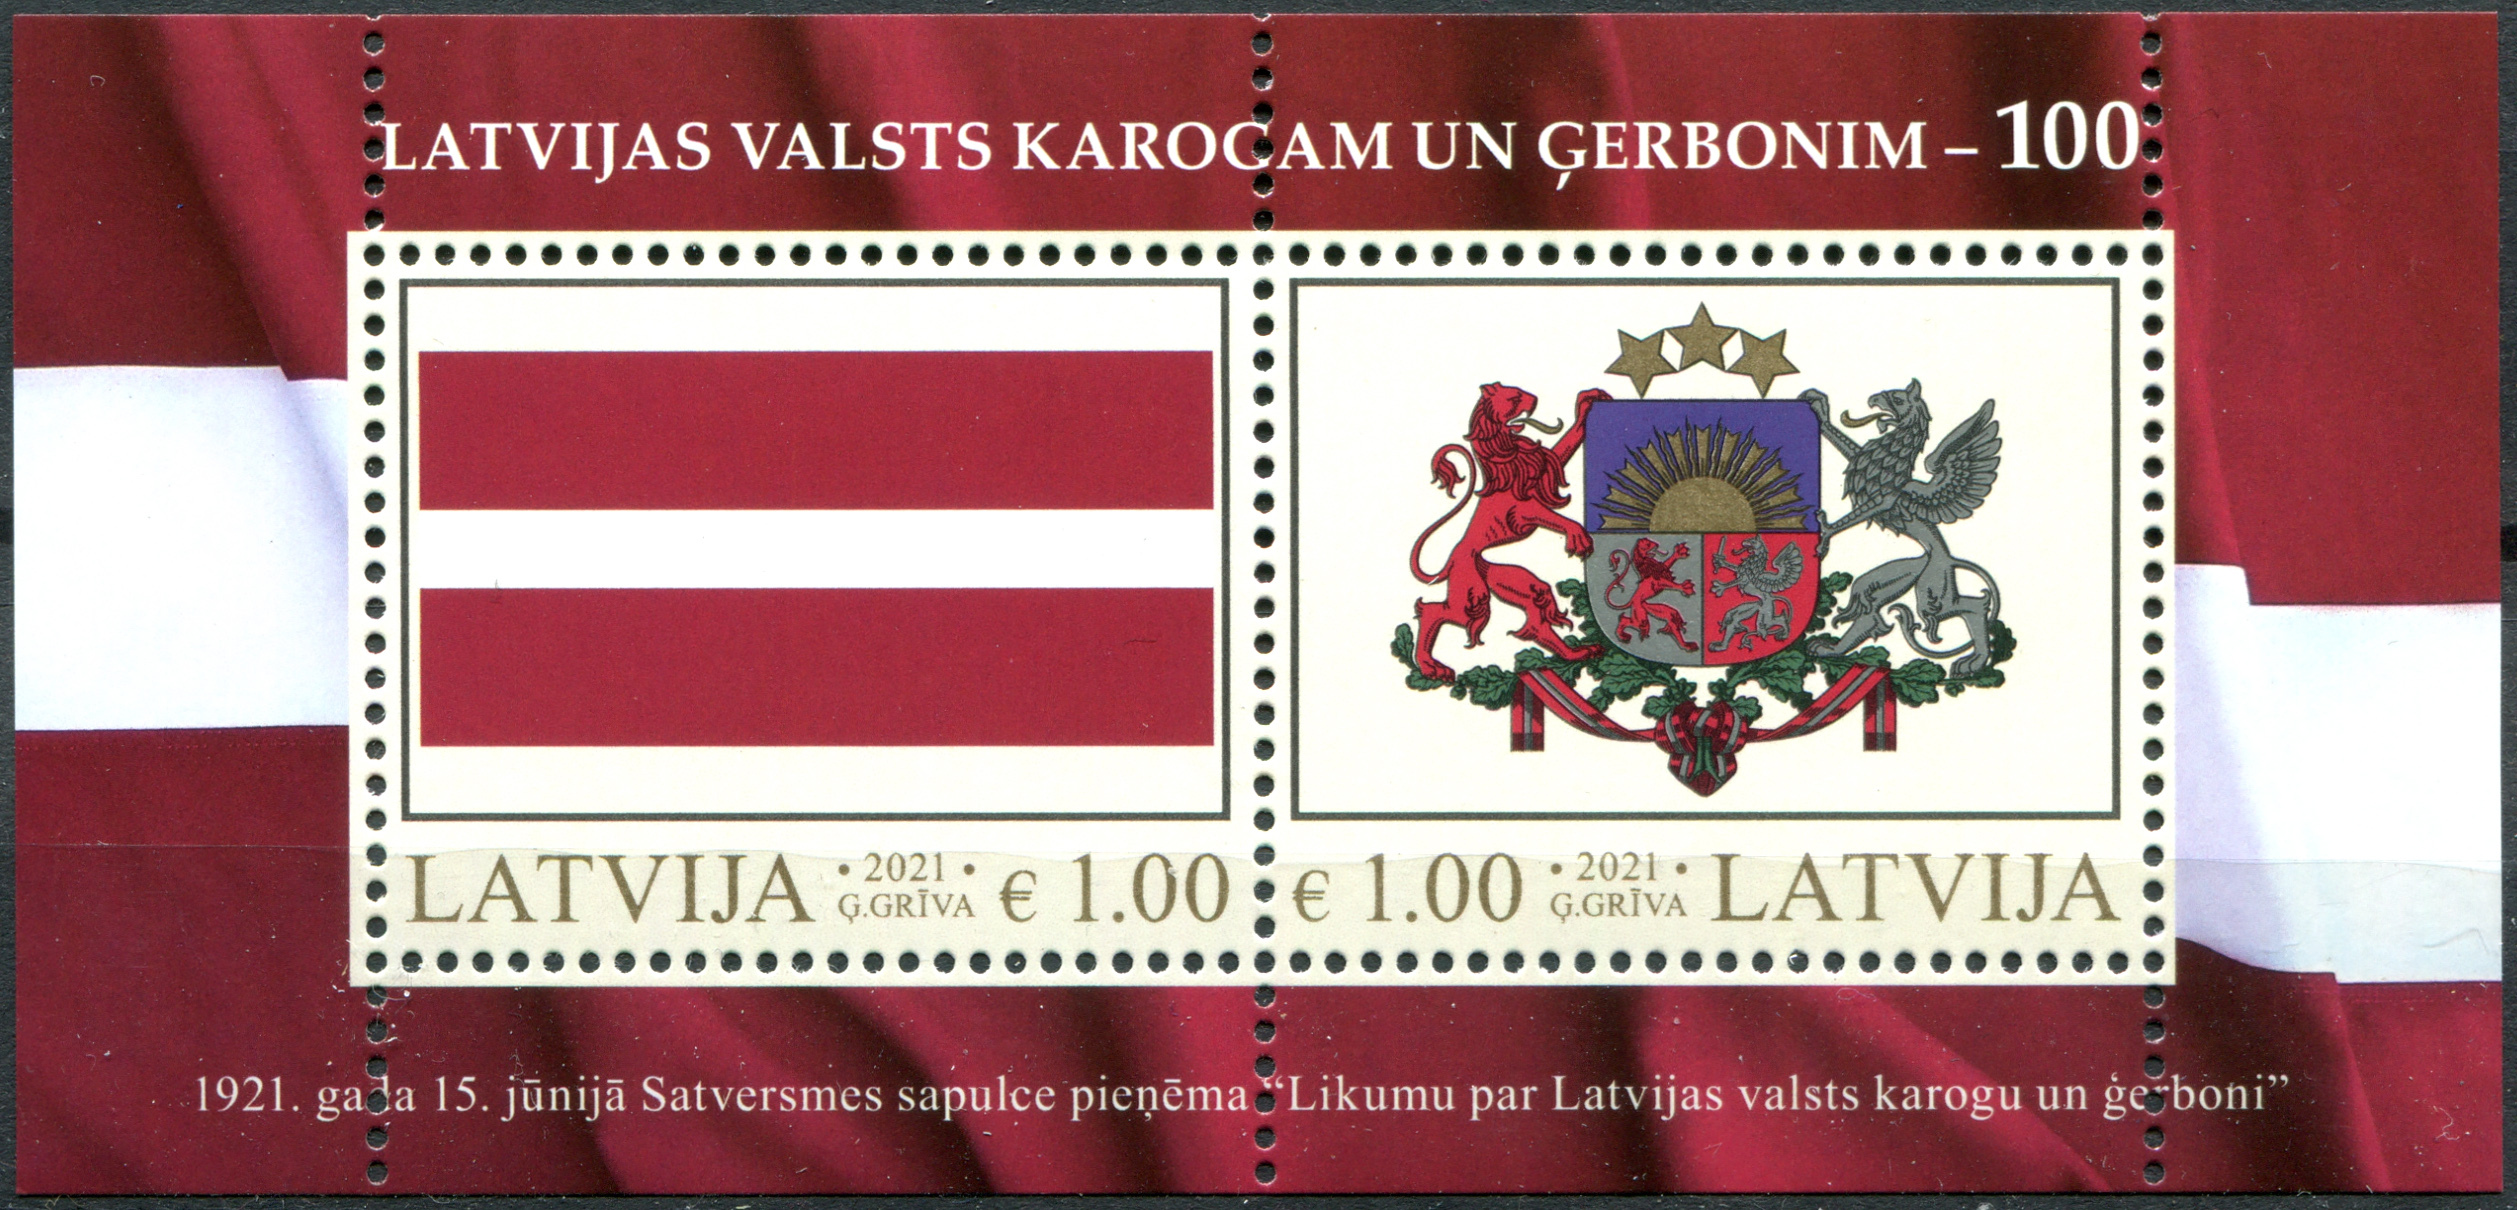 почтовые марки латвии